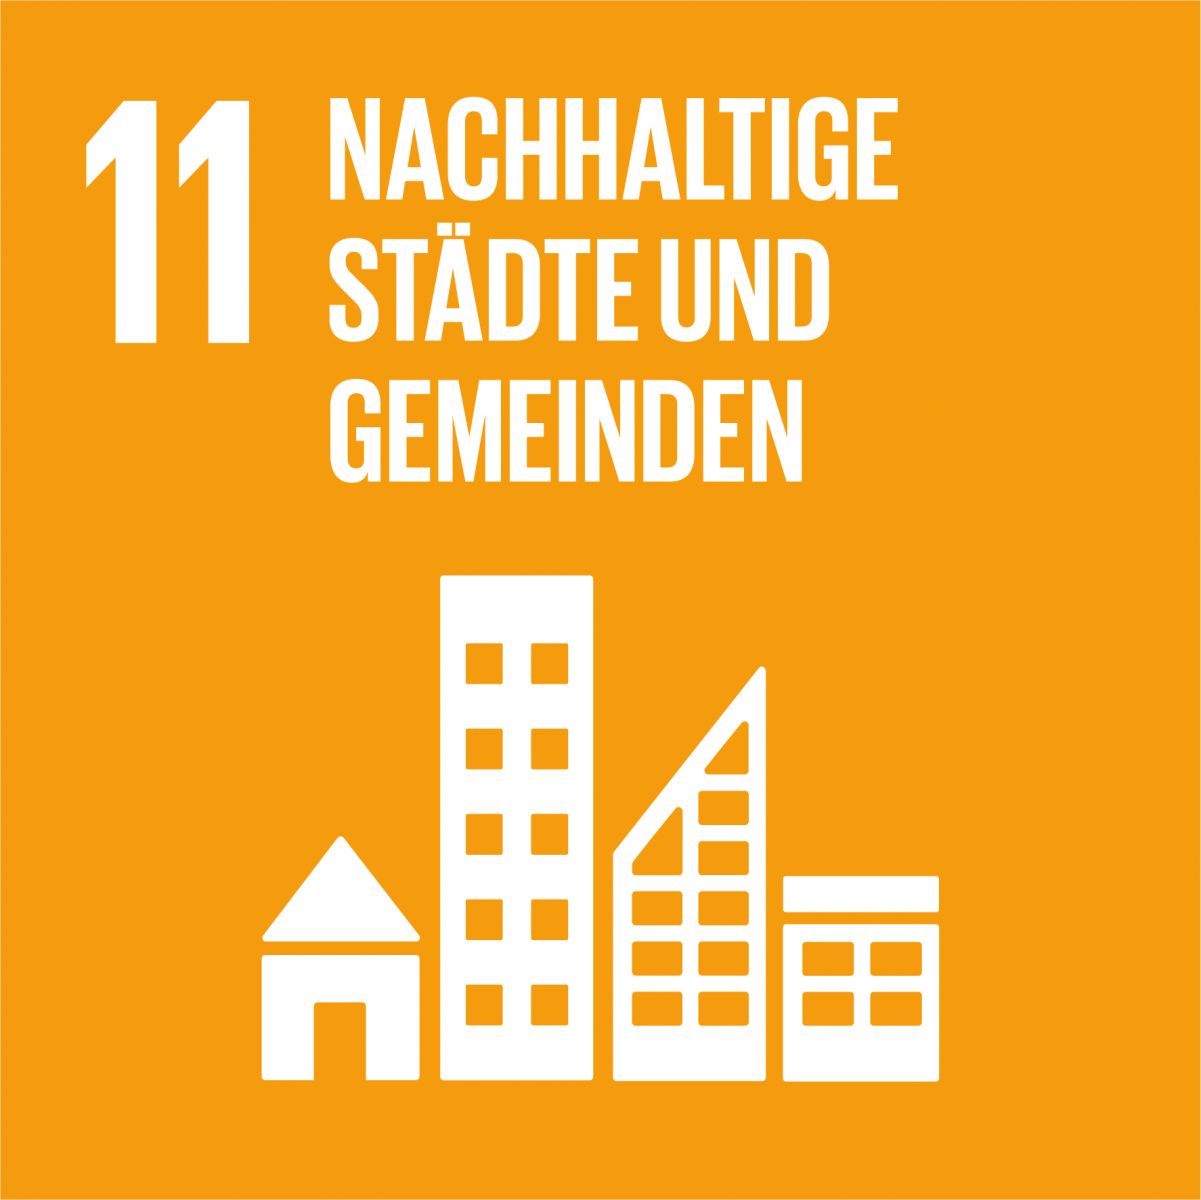 17 Nachhaltigkeitsziele - Nachhaltige Städte und Gemeinden